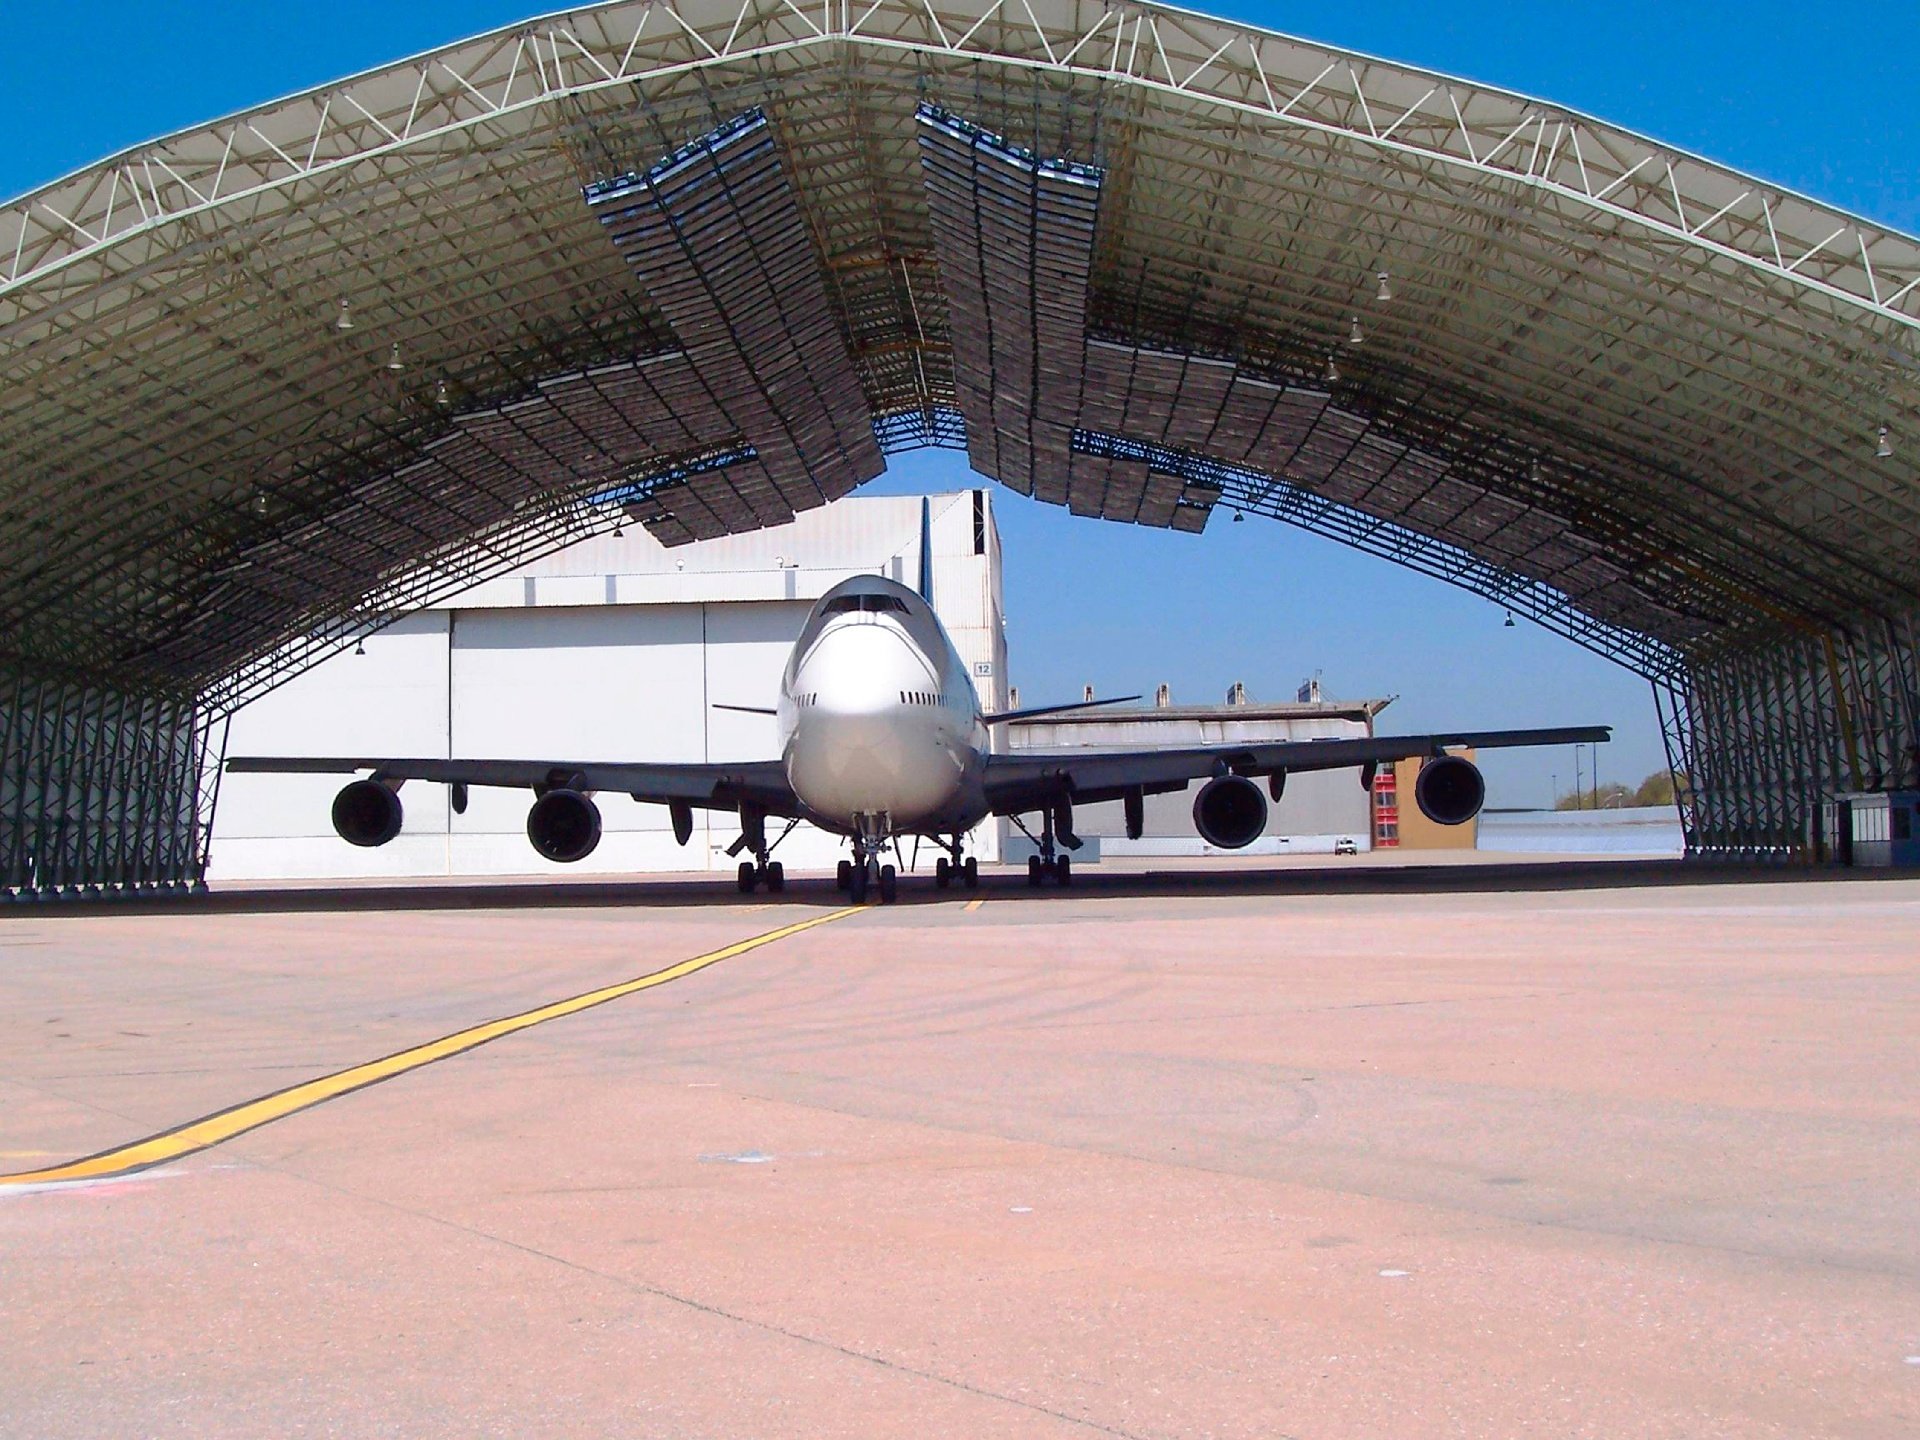 Best-Hall aircraft hangar